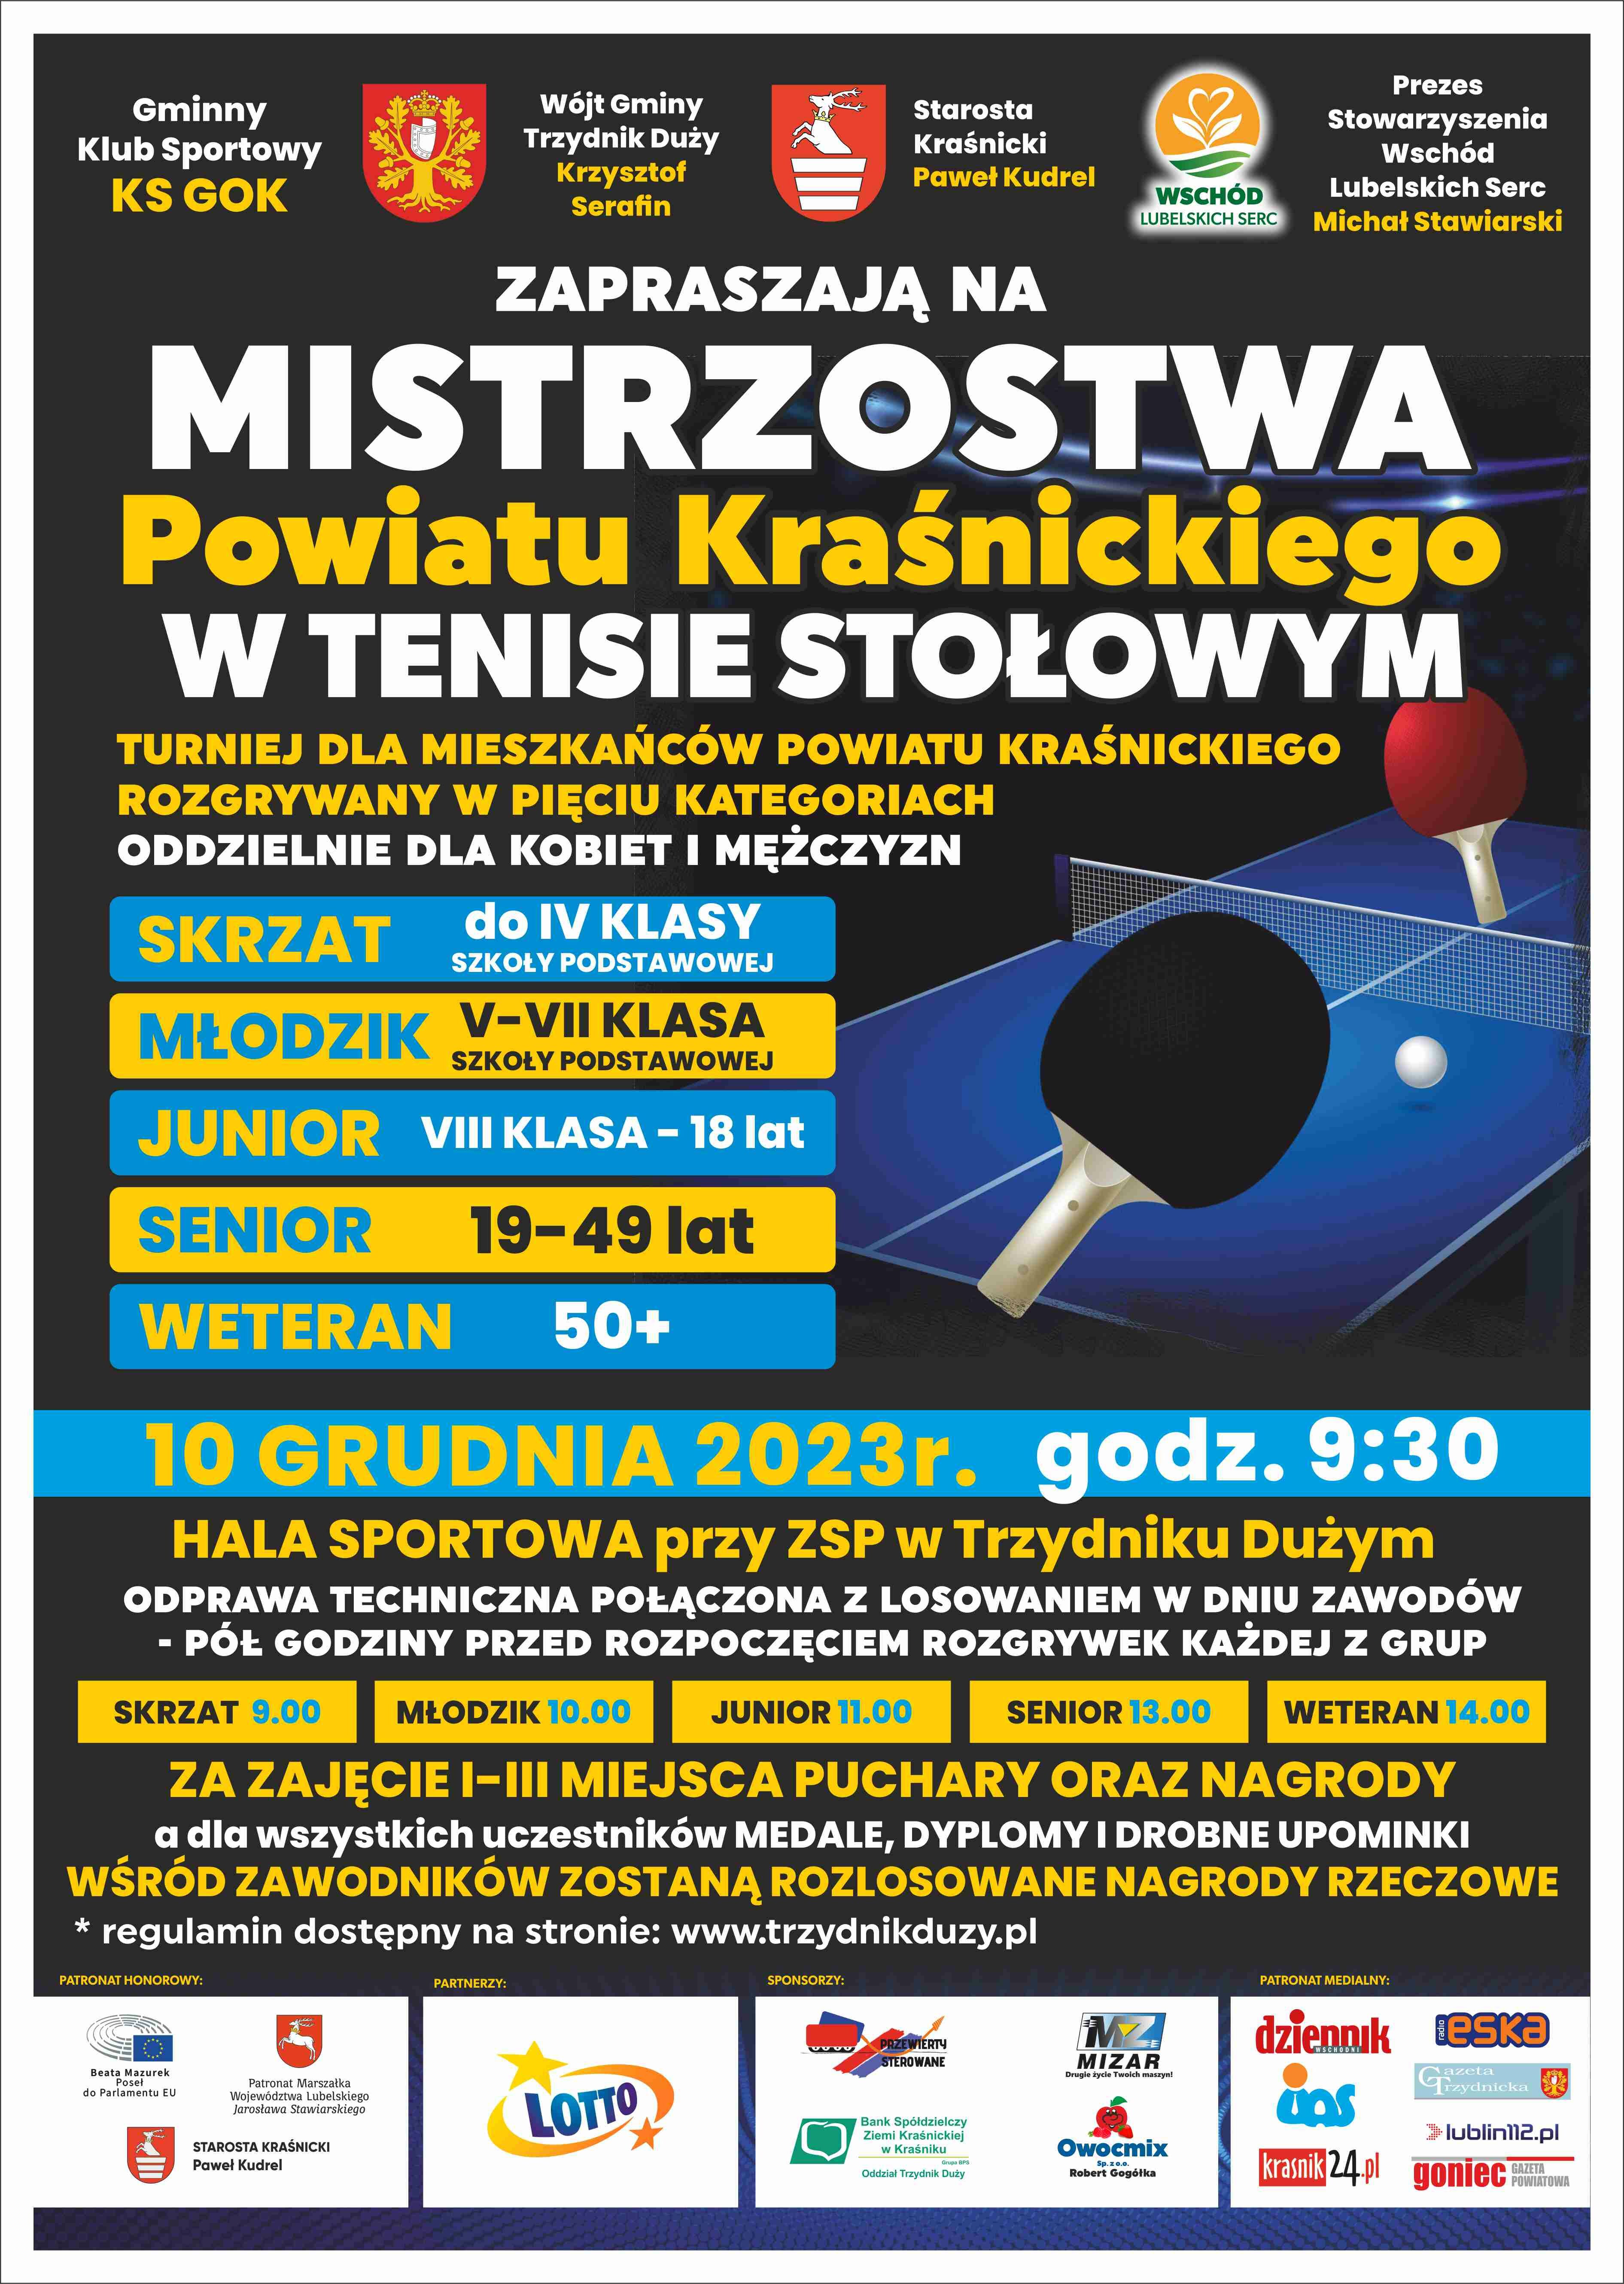 Plakat promujący mistrzostwa w tenisie stołowym dla różnych kategorii wiekowych, zaplanowane na 10 czerwca 2023 r. Zawiera informacje o lokalizacji, harmonogramie oraz nagrodach.